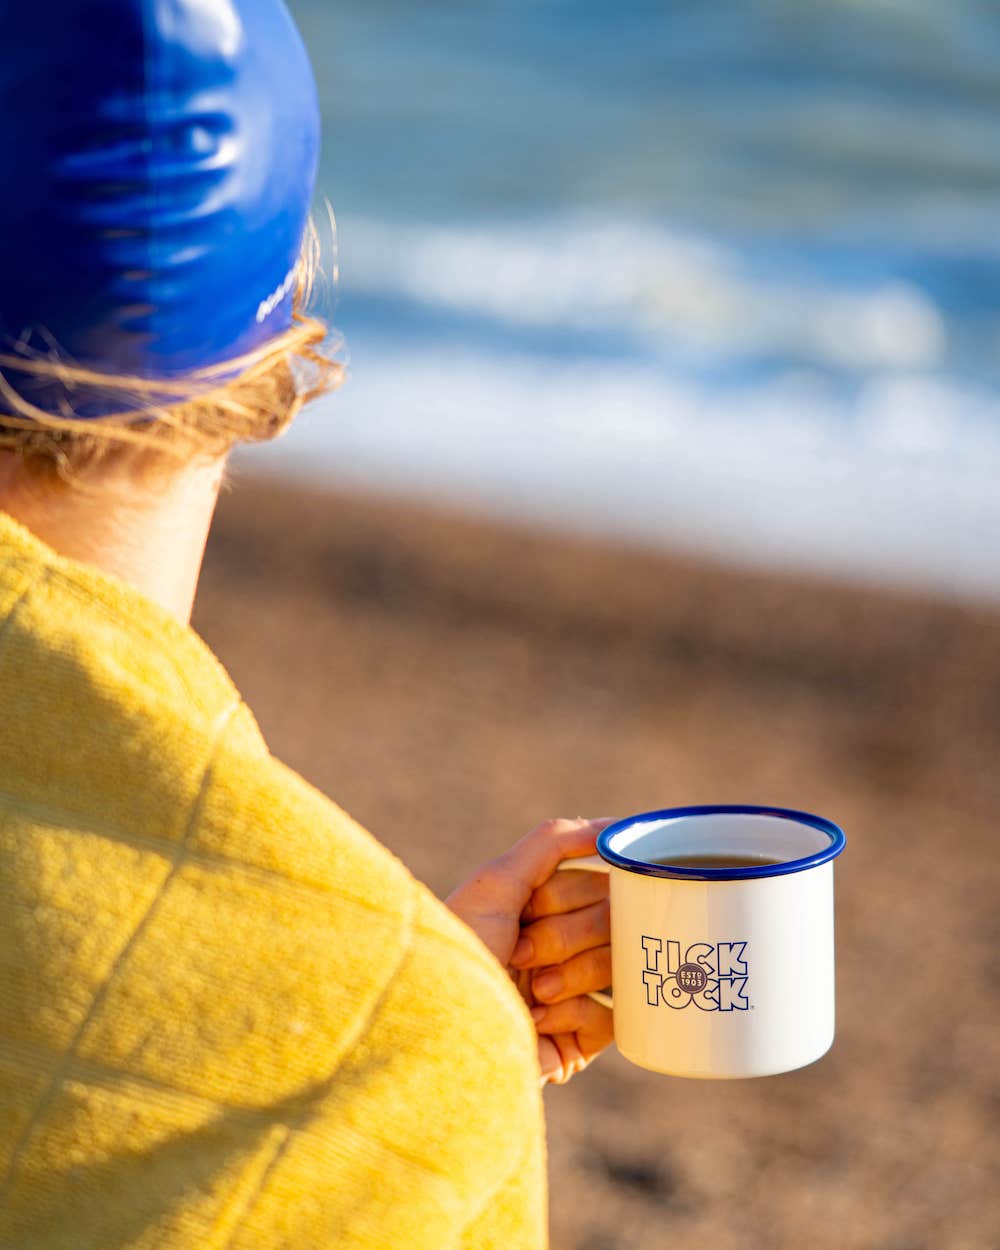 At the beach with a mug of tea